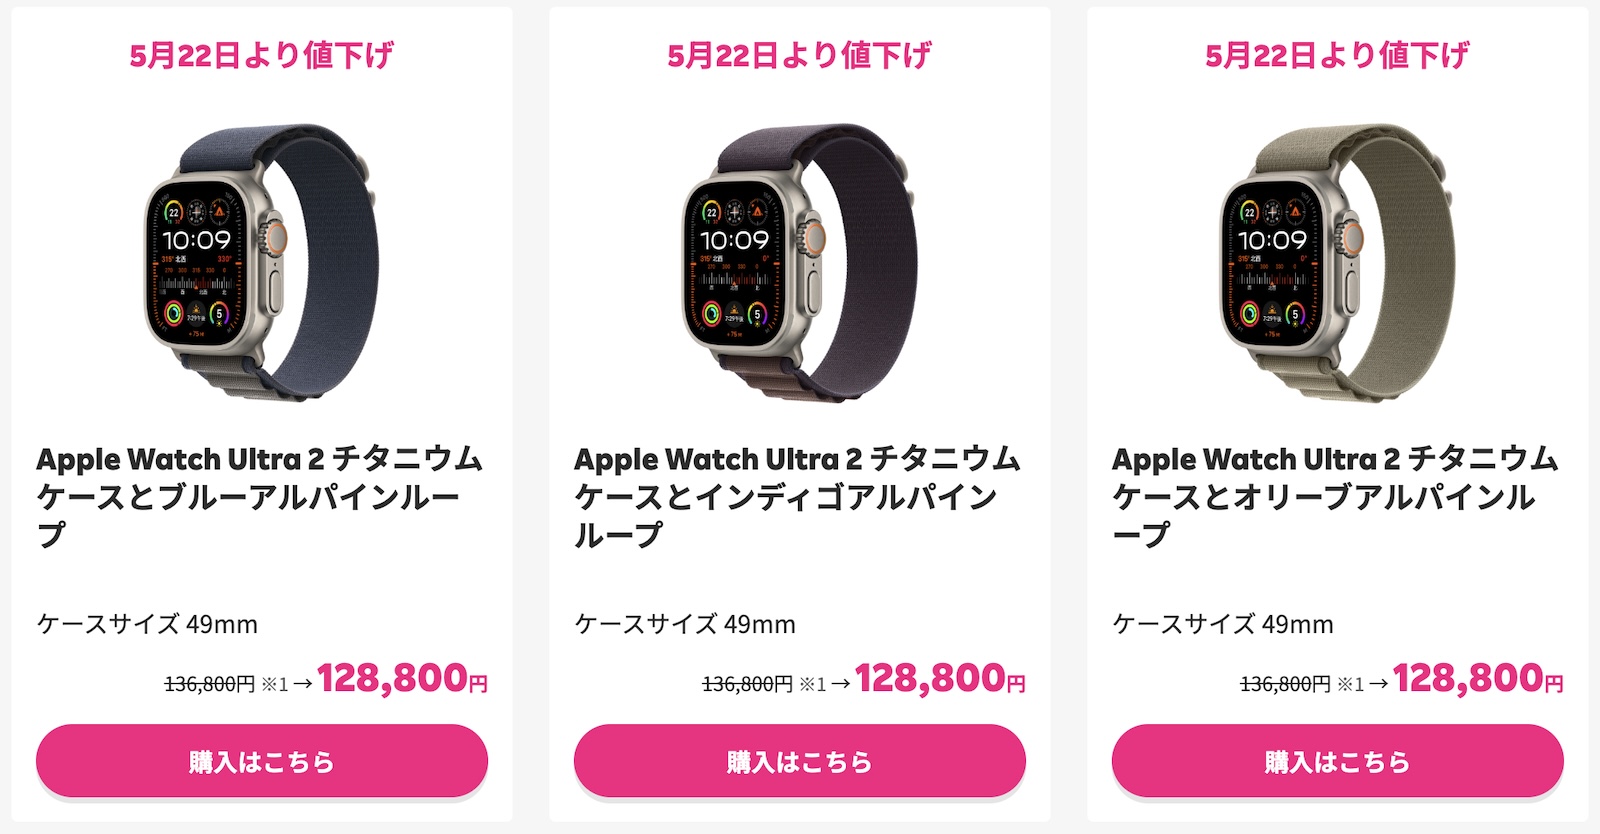 Apple Watch Ultra2 on sale at rakuten